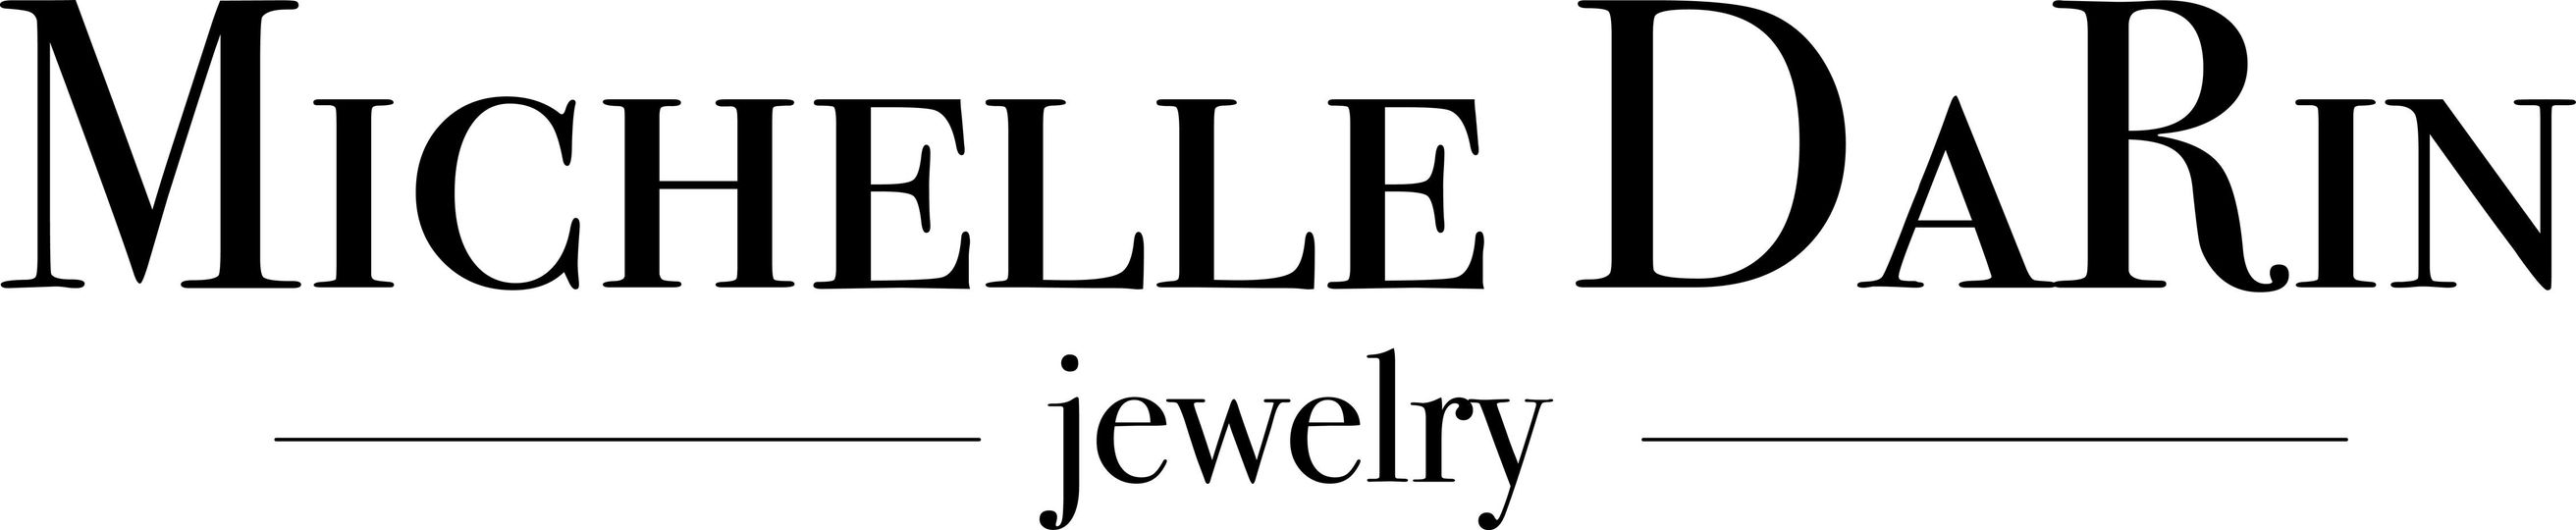 Michelle DaRin Jewelry